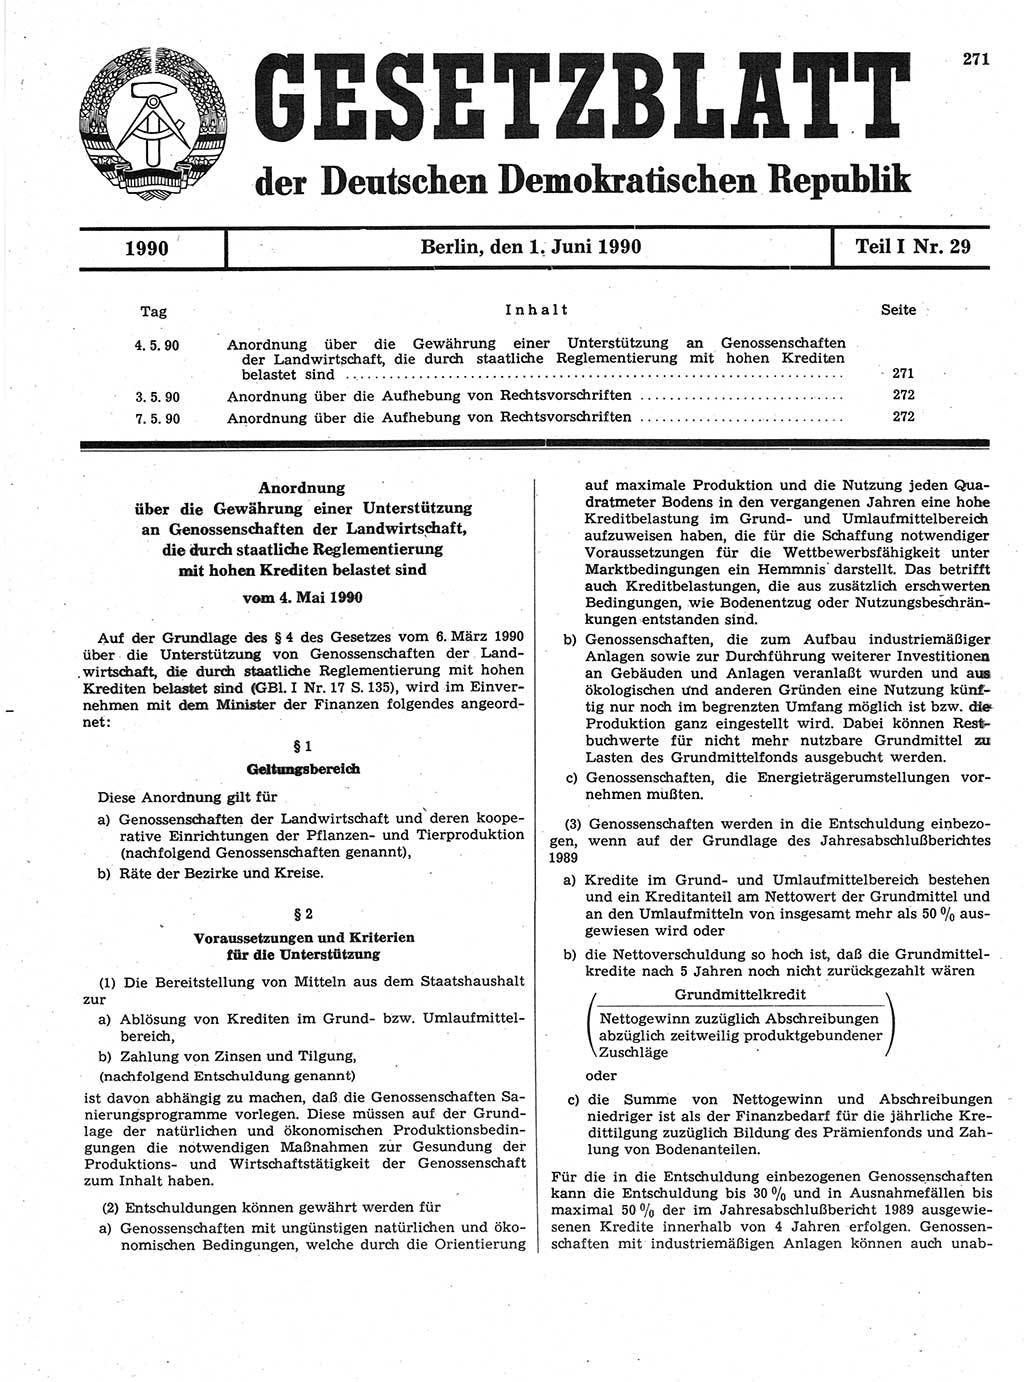 Gesetzblatt (GBl.) der Deutschen Demokratischen Republik (DDR) Teil Ⅰ 1990, Seite 271 (GBl. DDR Ⅰ 1990, S. 271)